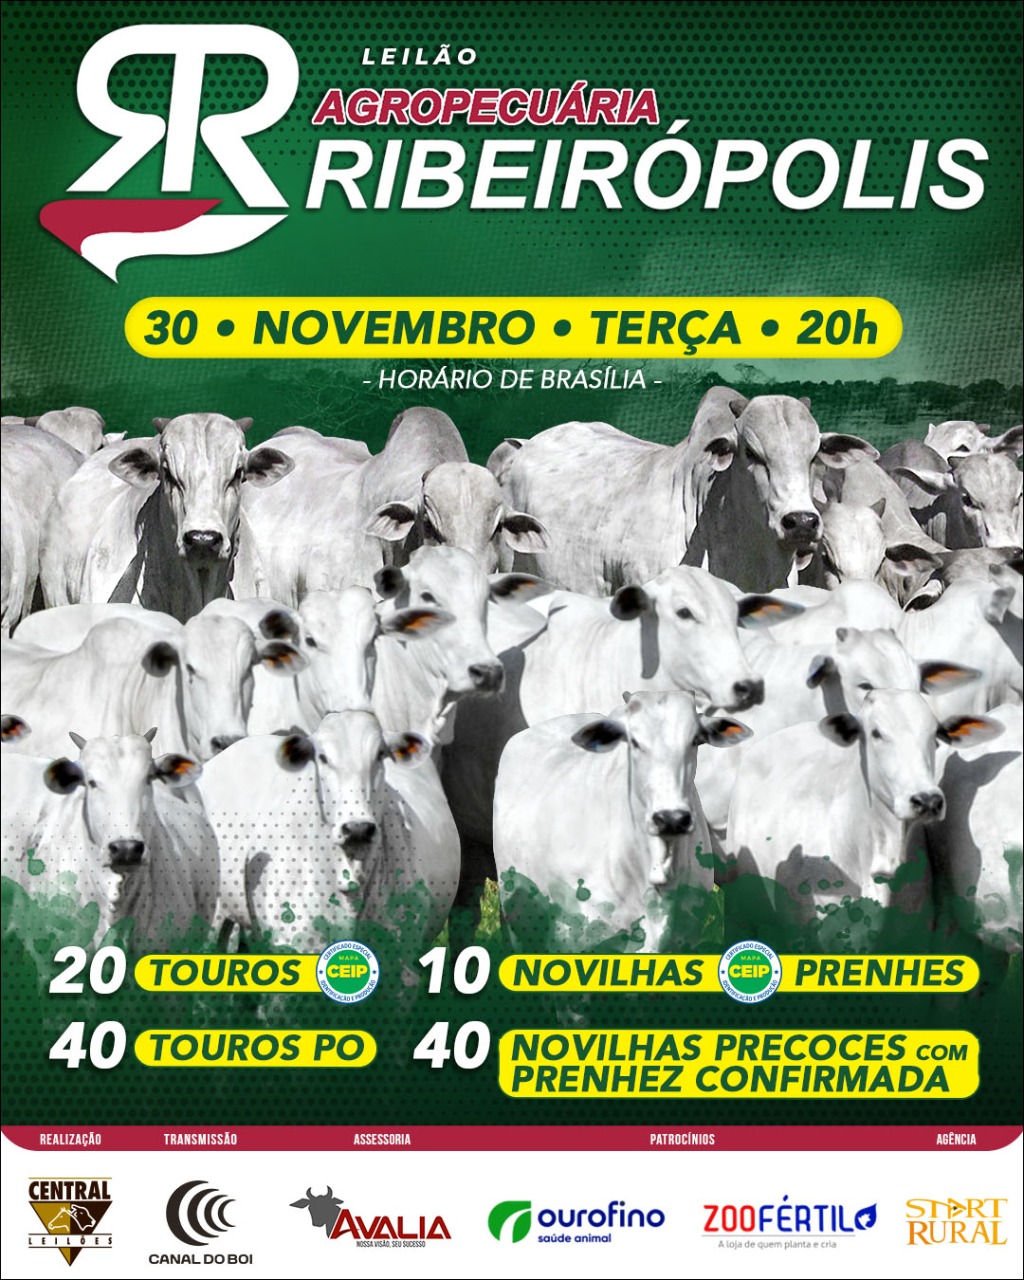 LEILÃO VIRTUAL AGROPECUÁRIA RIBEIRÓPOLIS